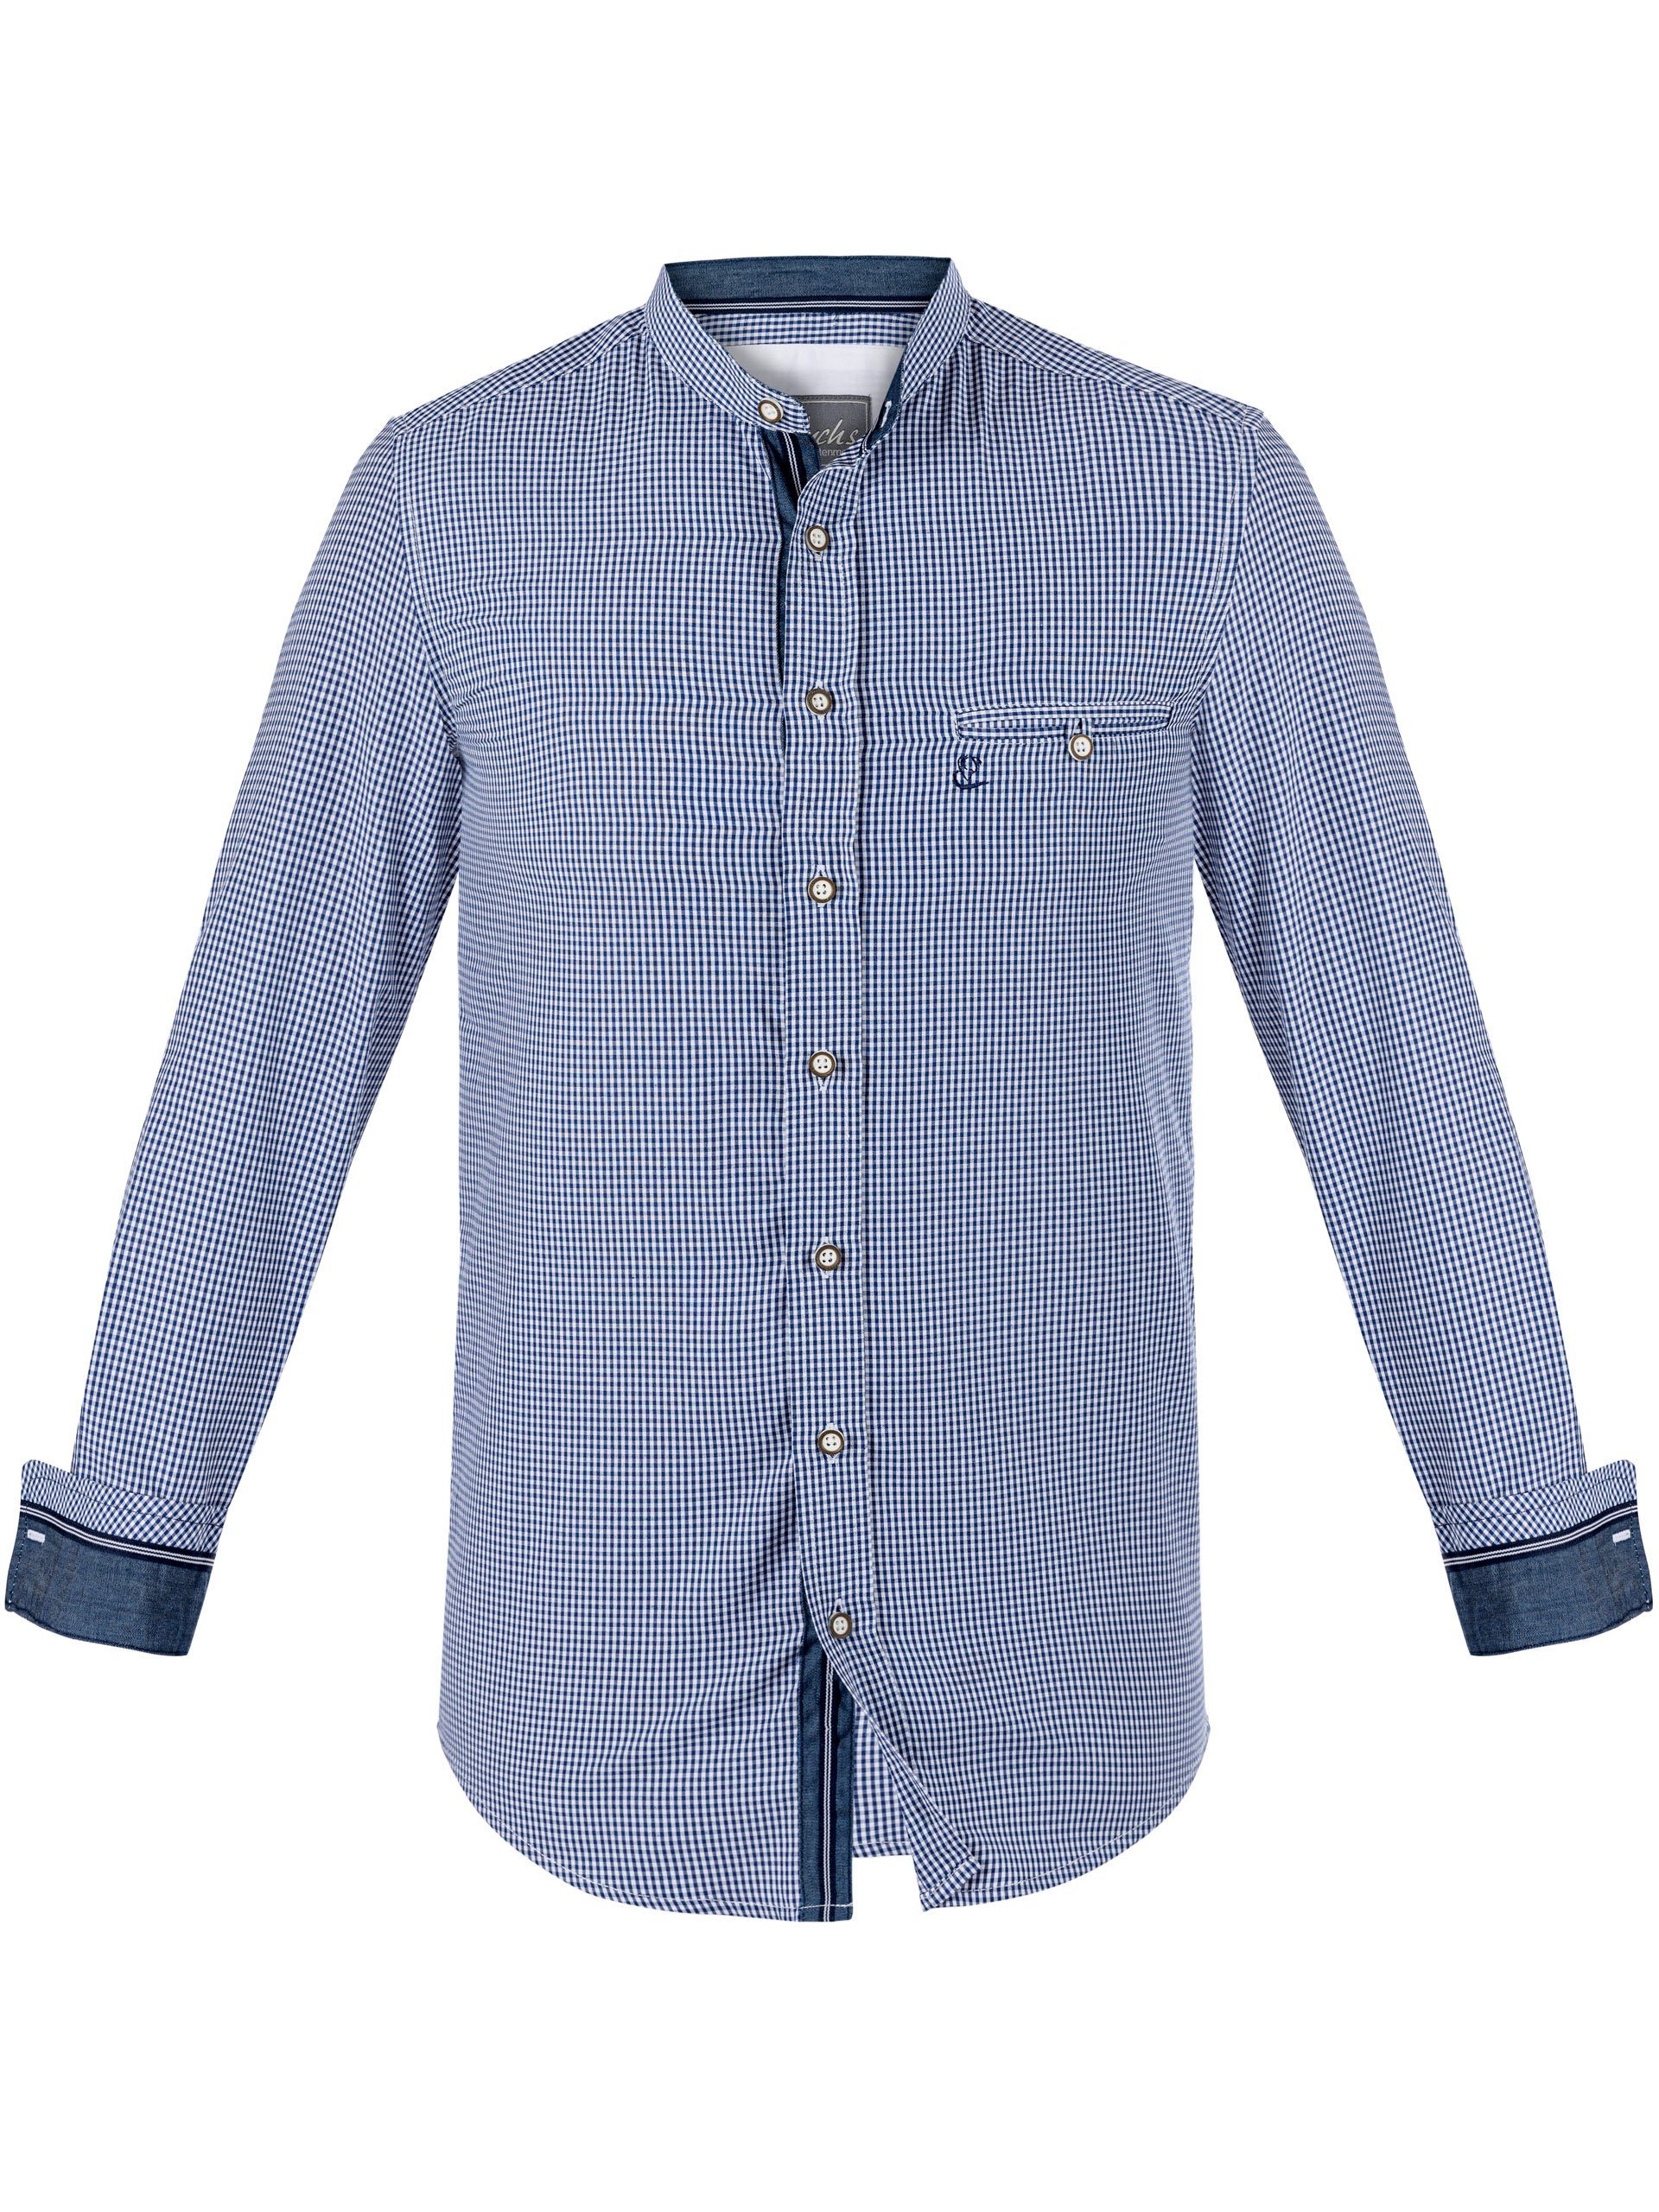 FUCHS Trachtenhemd Hemd Georg blau mit Stehkragen | Trachtenhemden